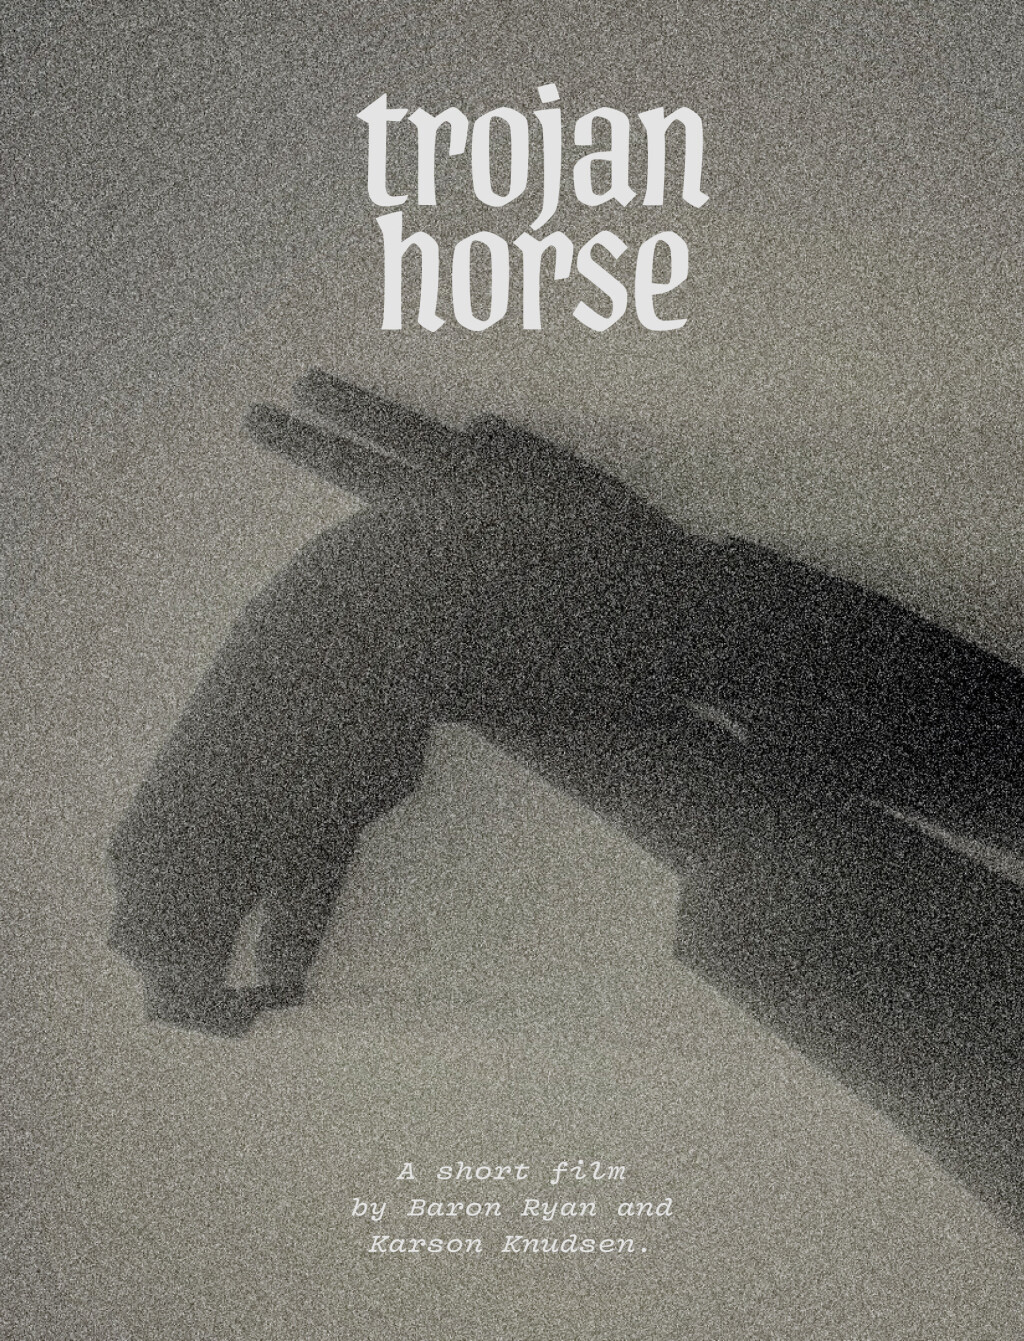 Filmposter for Trojan Horse